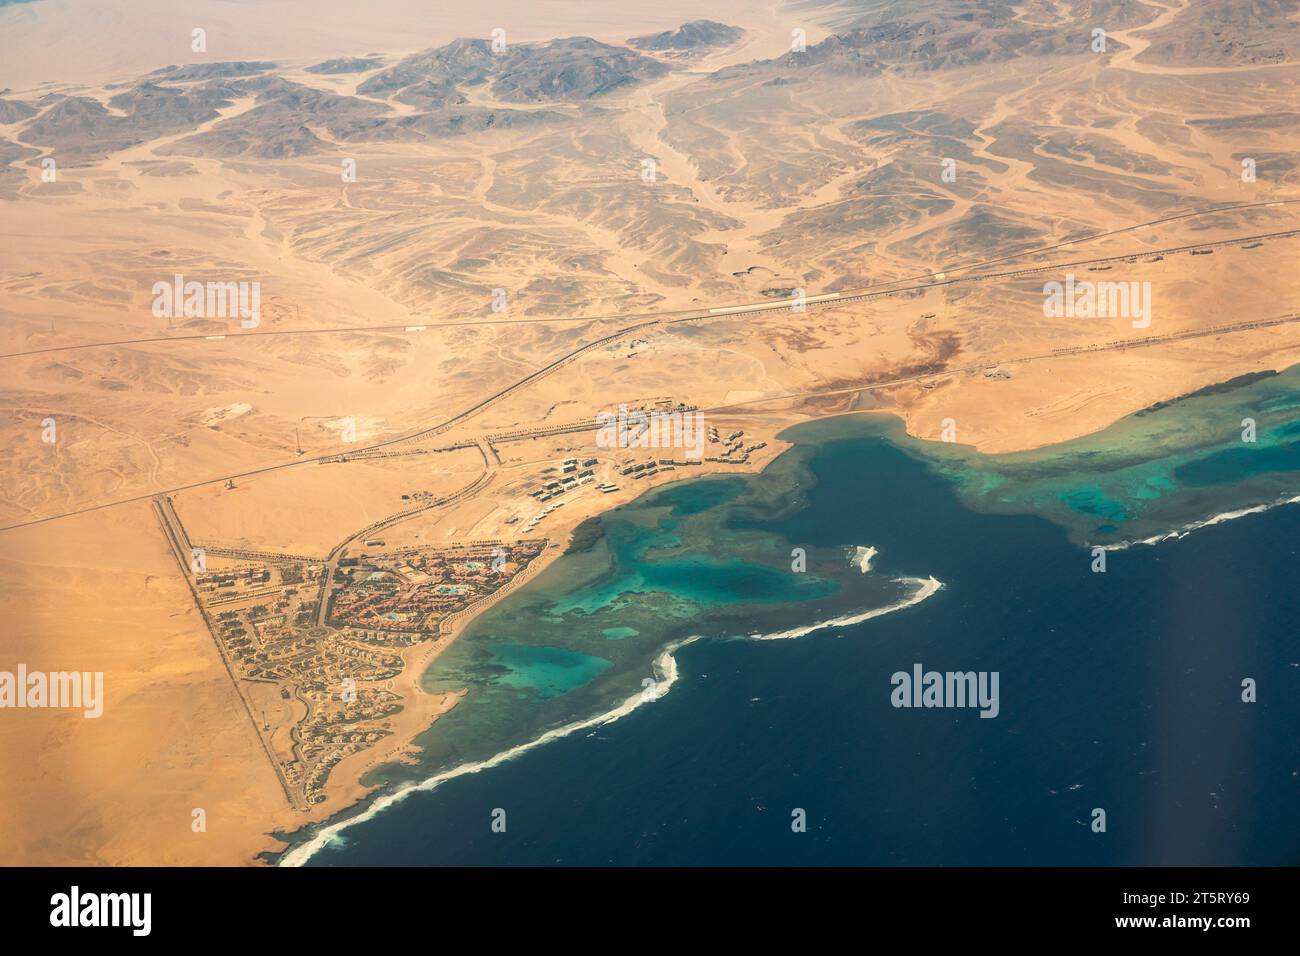 Vista aérea del desierto y cerca de la costa de los arrecifes de coral de Egipto, la remota costa sur del Mar Rojo Foto de stock